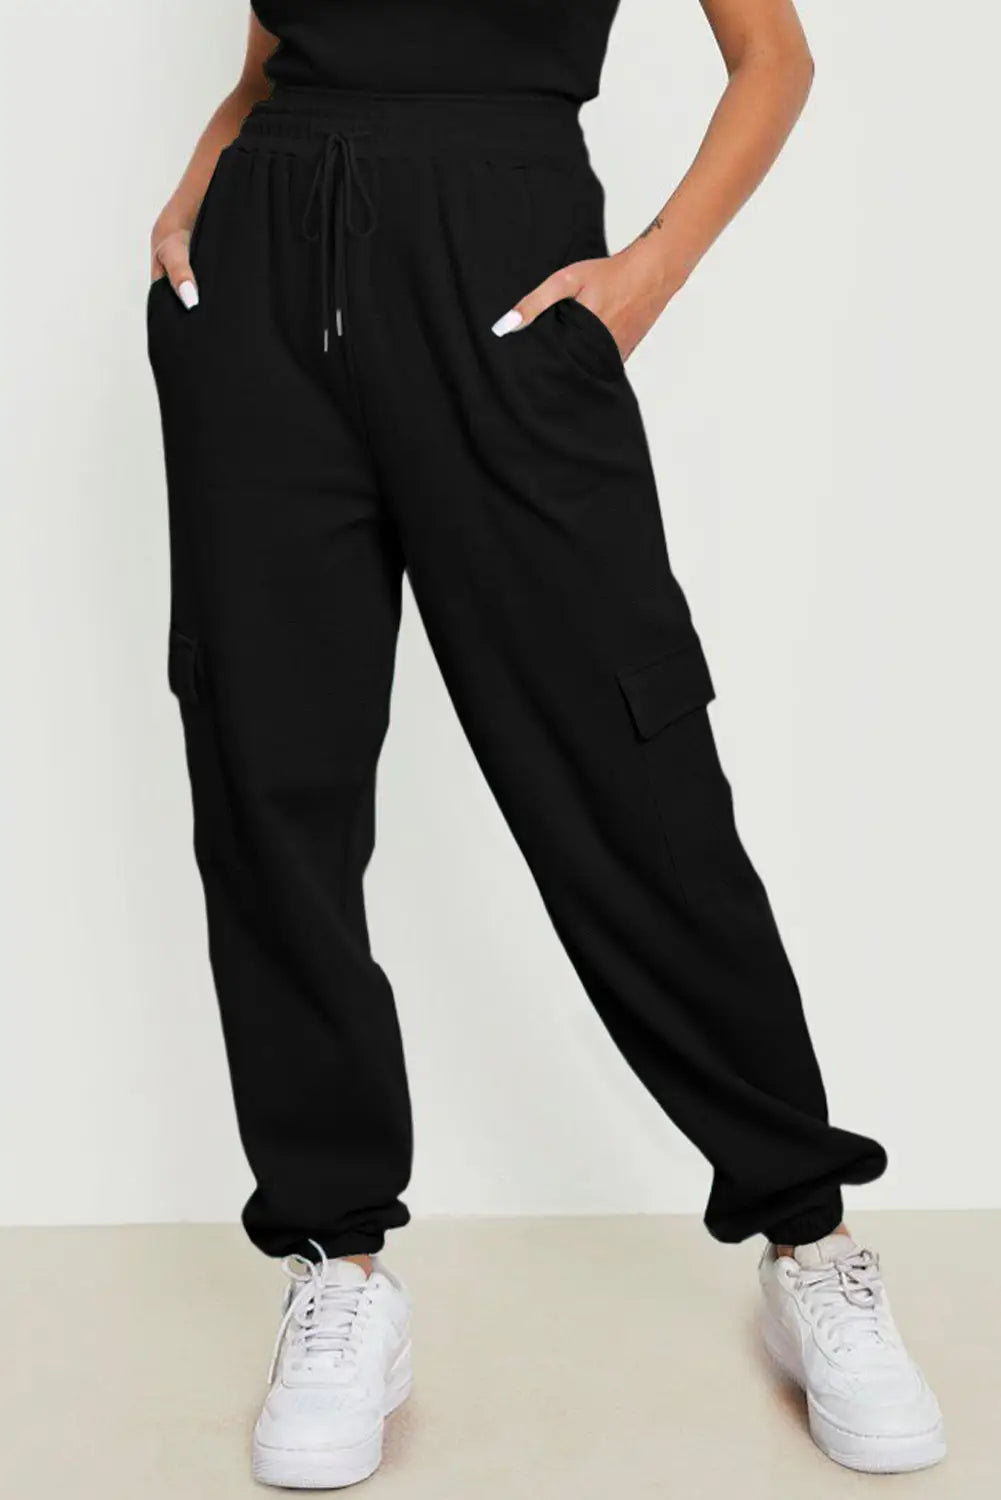 Gray waffle texture cargo pocket jogger pants - black / 2xl / 95% polyester + 5% elastane - joggers